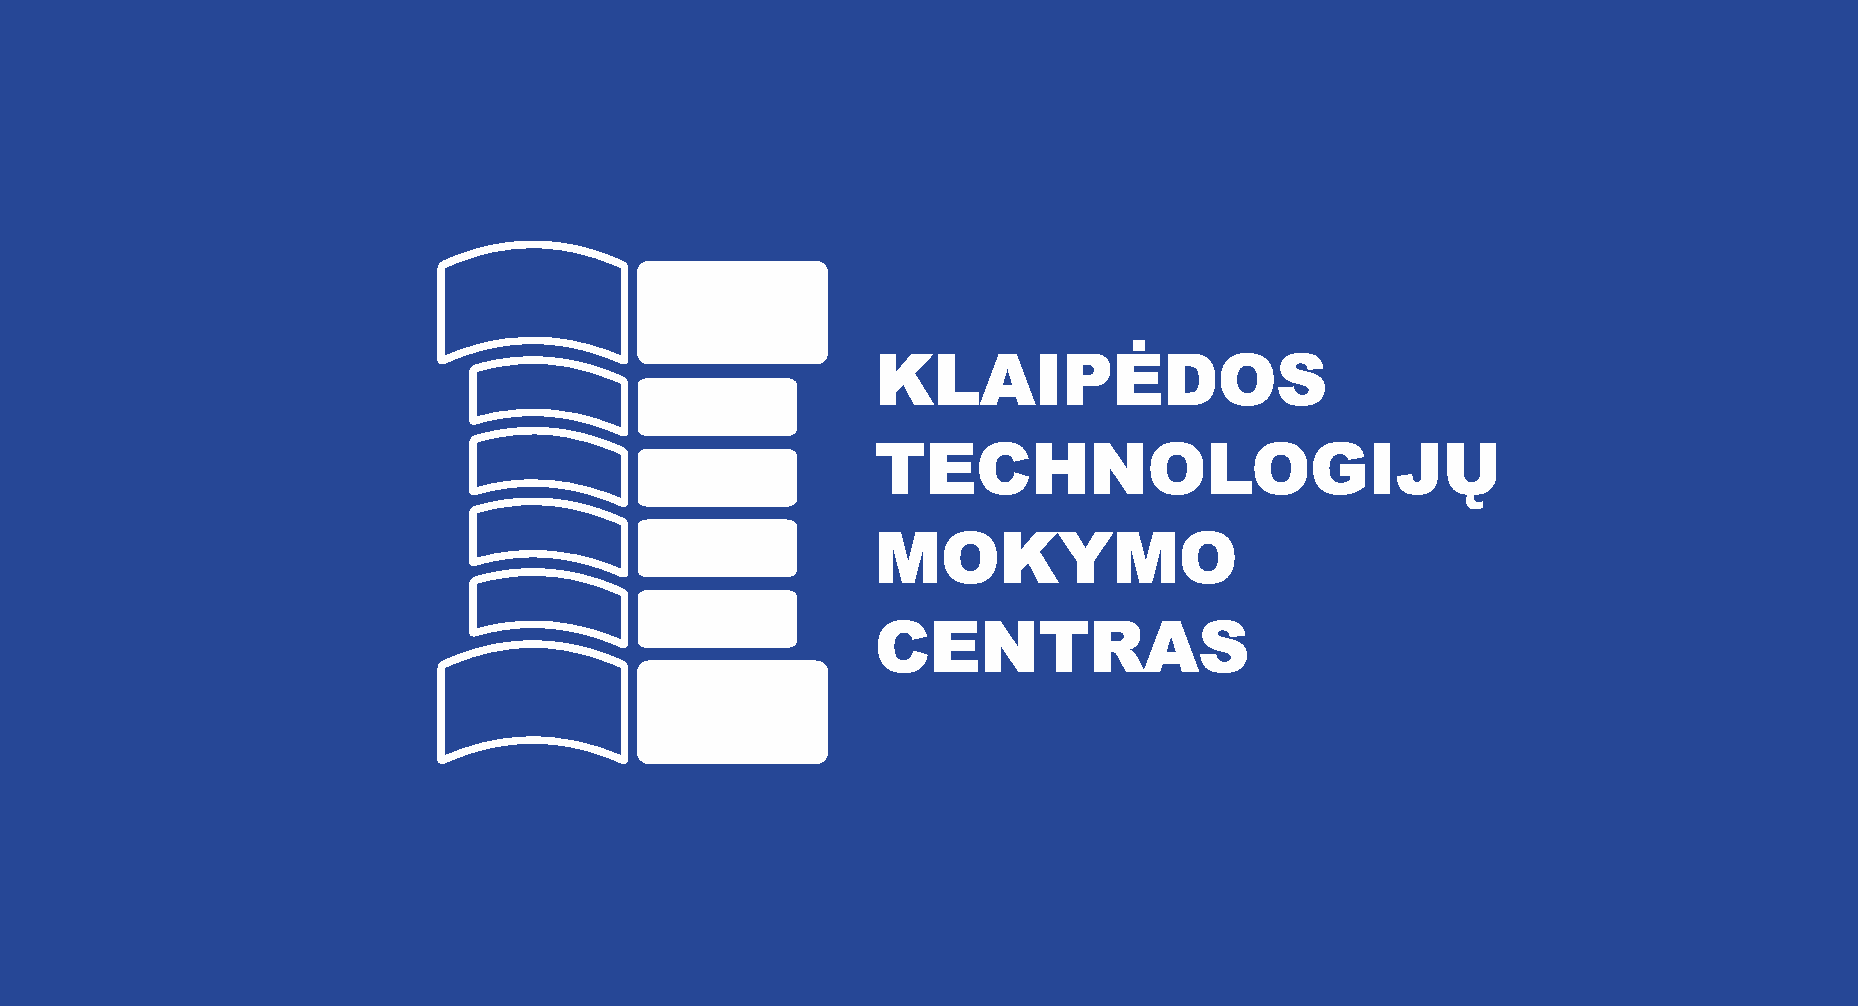 Klaipėdos technologijų mokymo centras